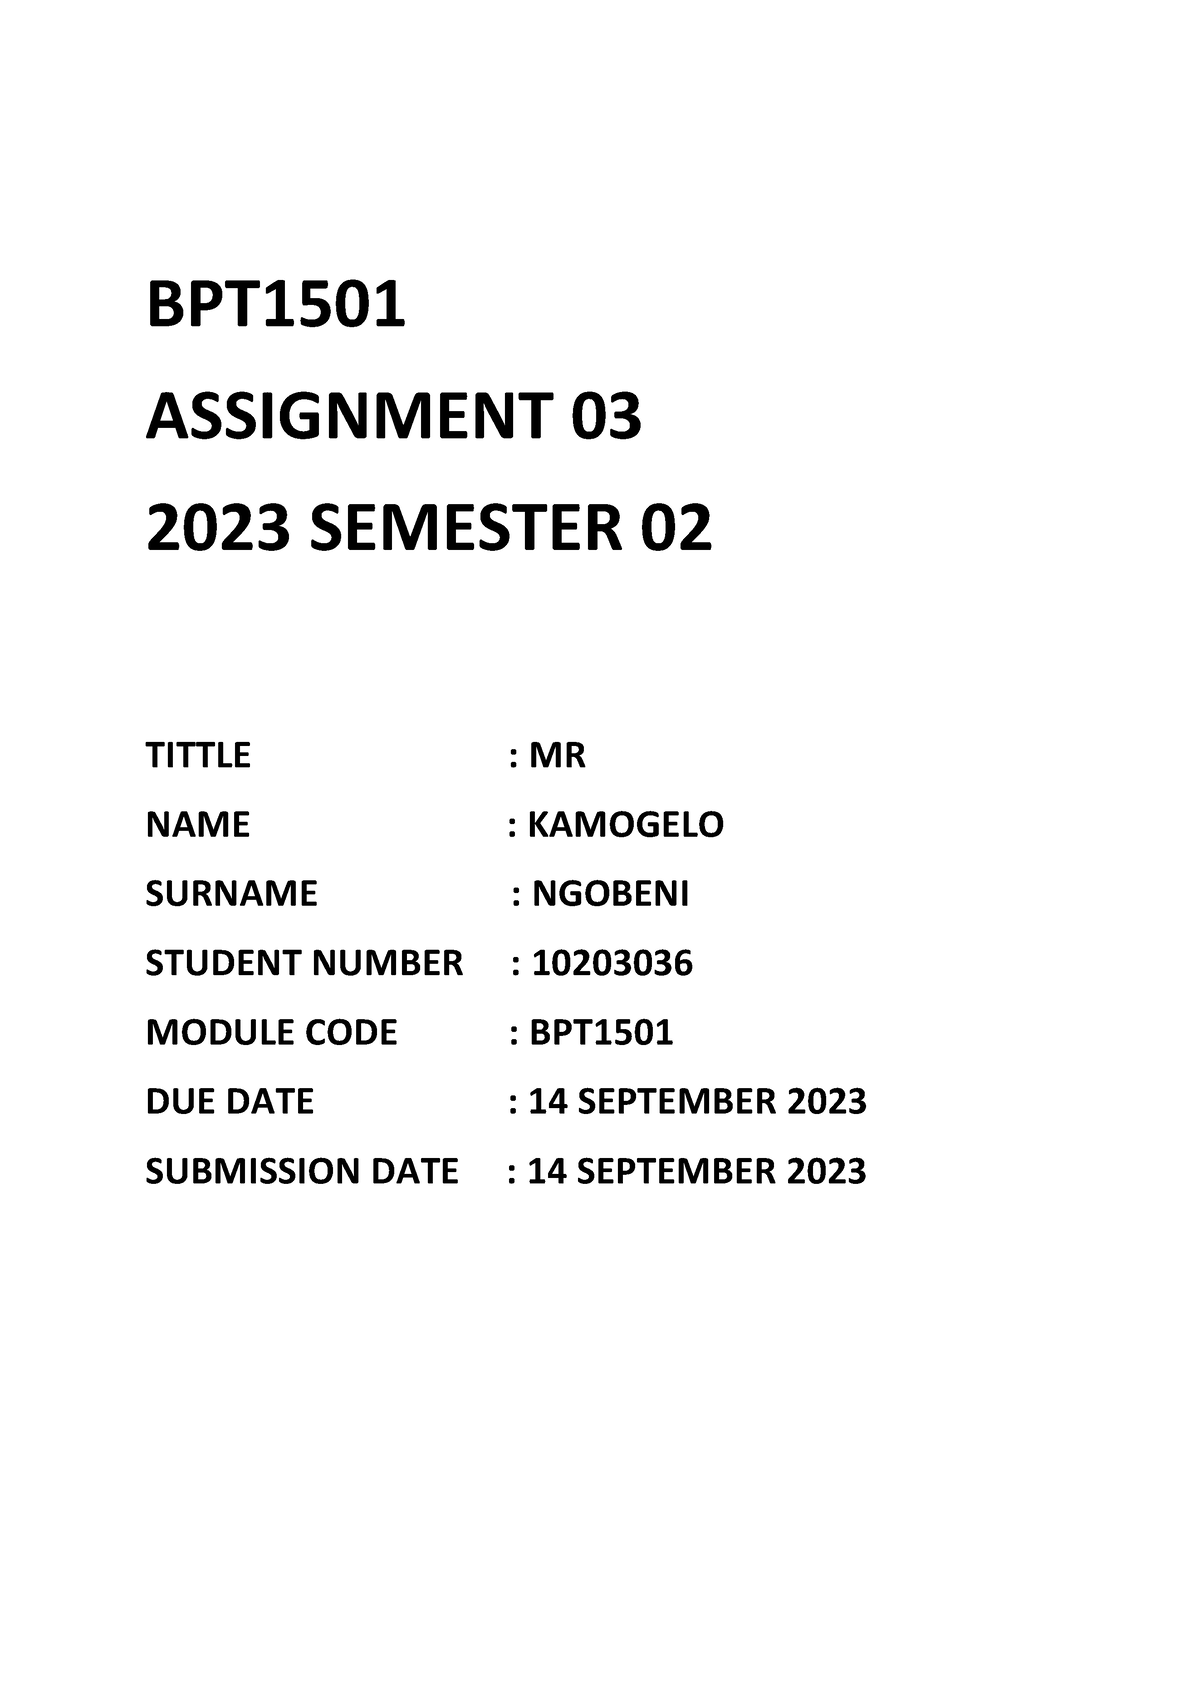 bpt1501 assignment 5 2023